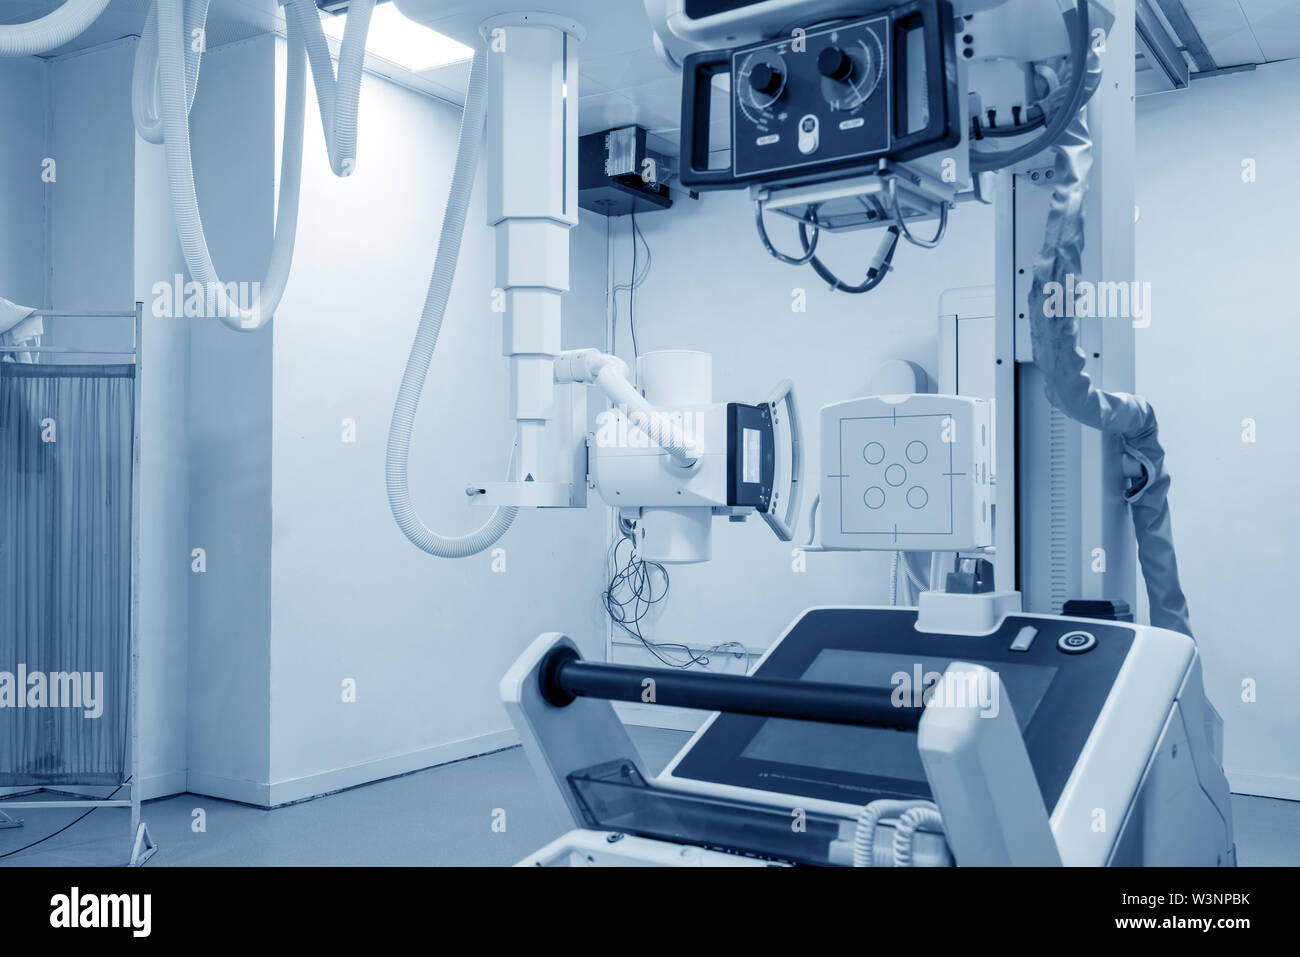 Krankenhaus X-Ray Maschine für Durchleuchtung Stockfoto